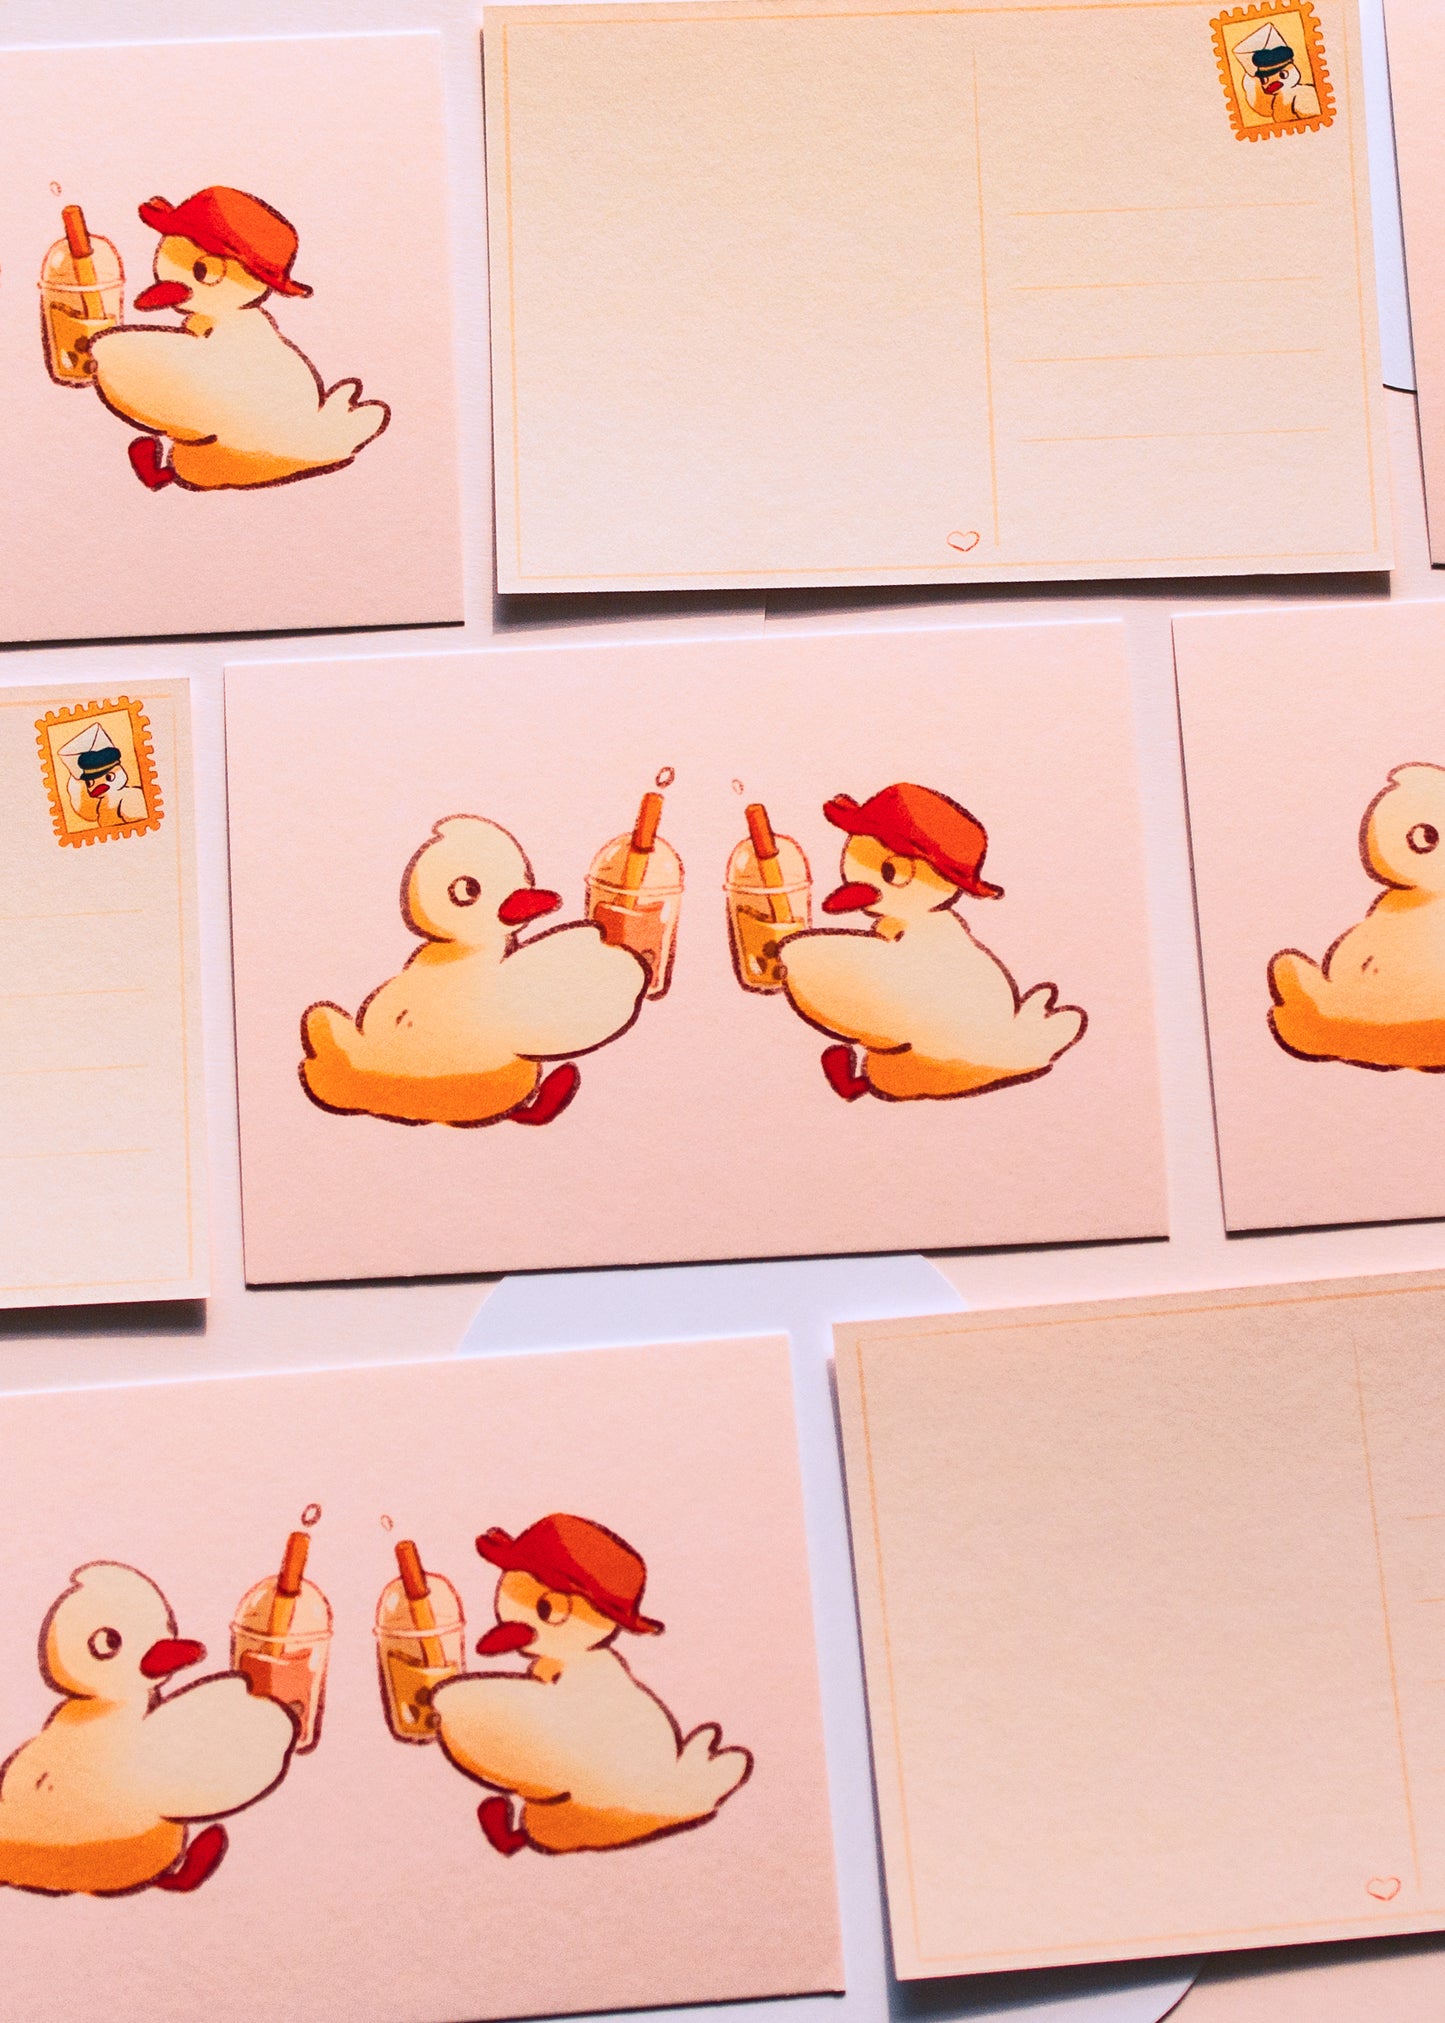 Mini prints - Bubble tea ducks